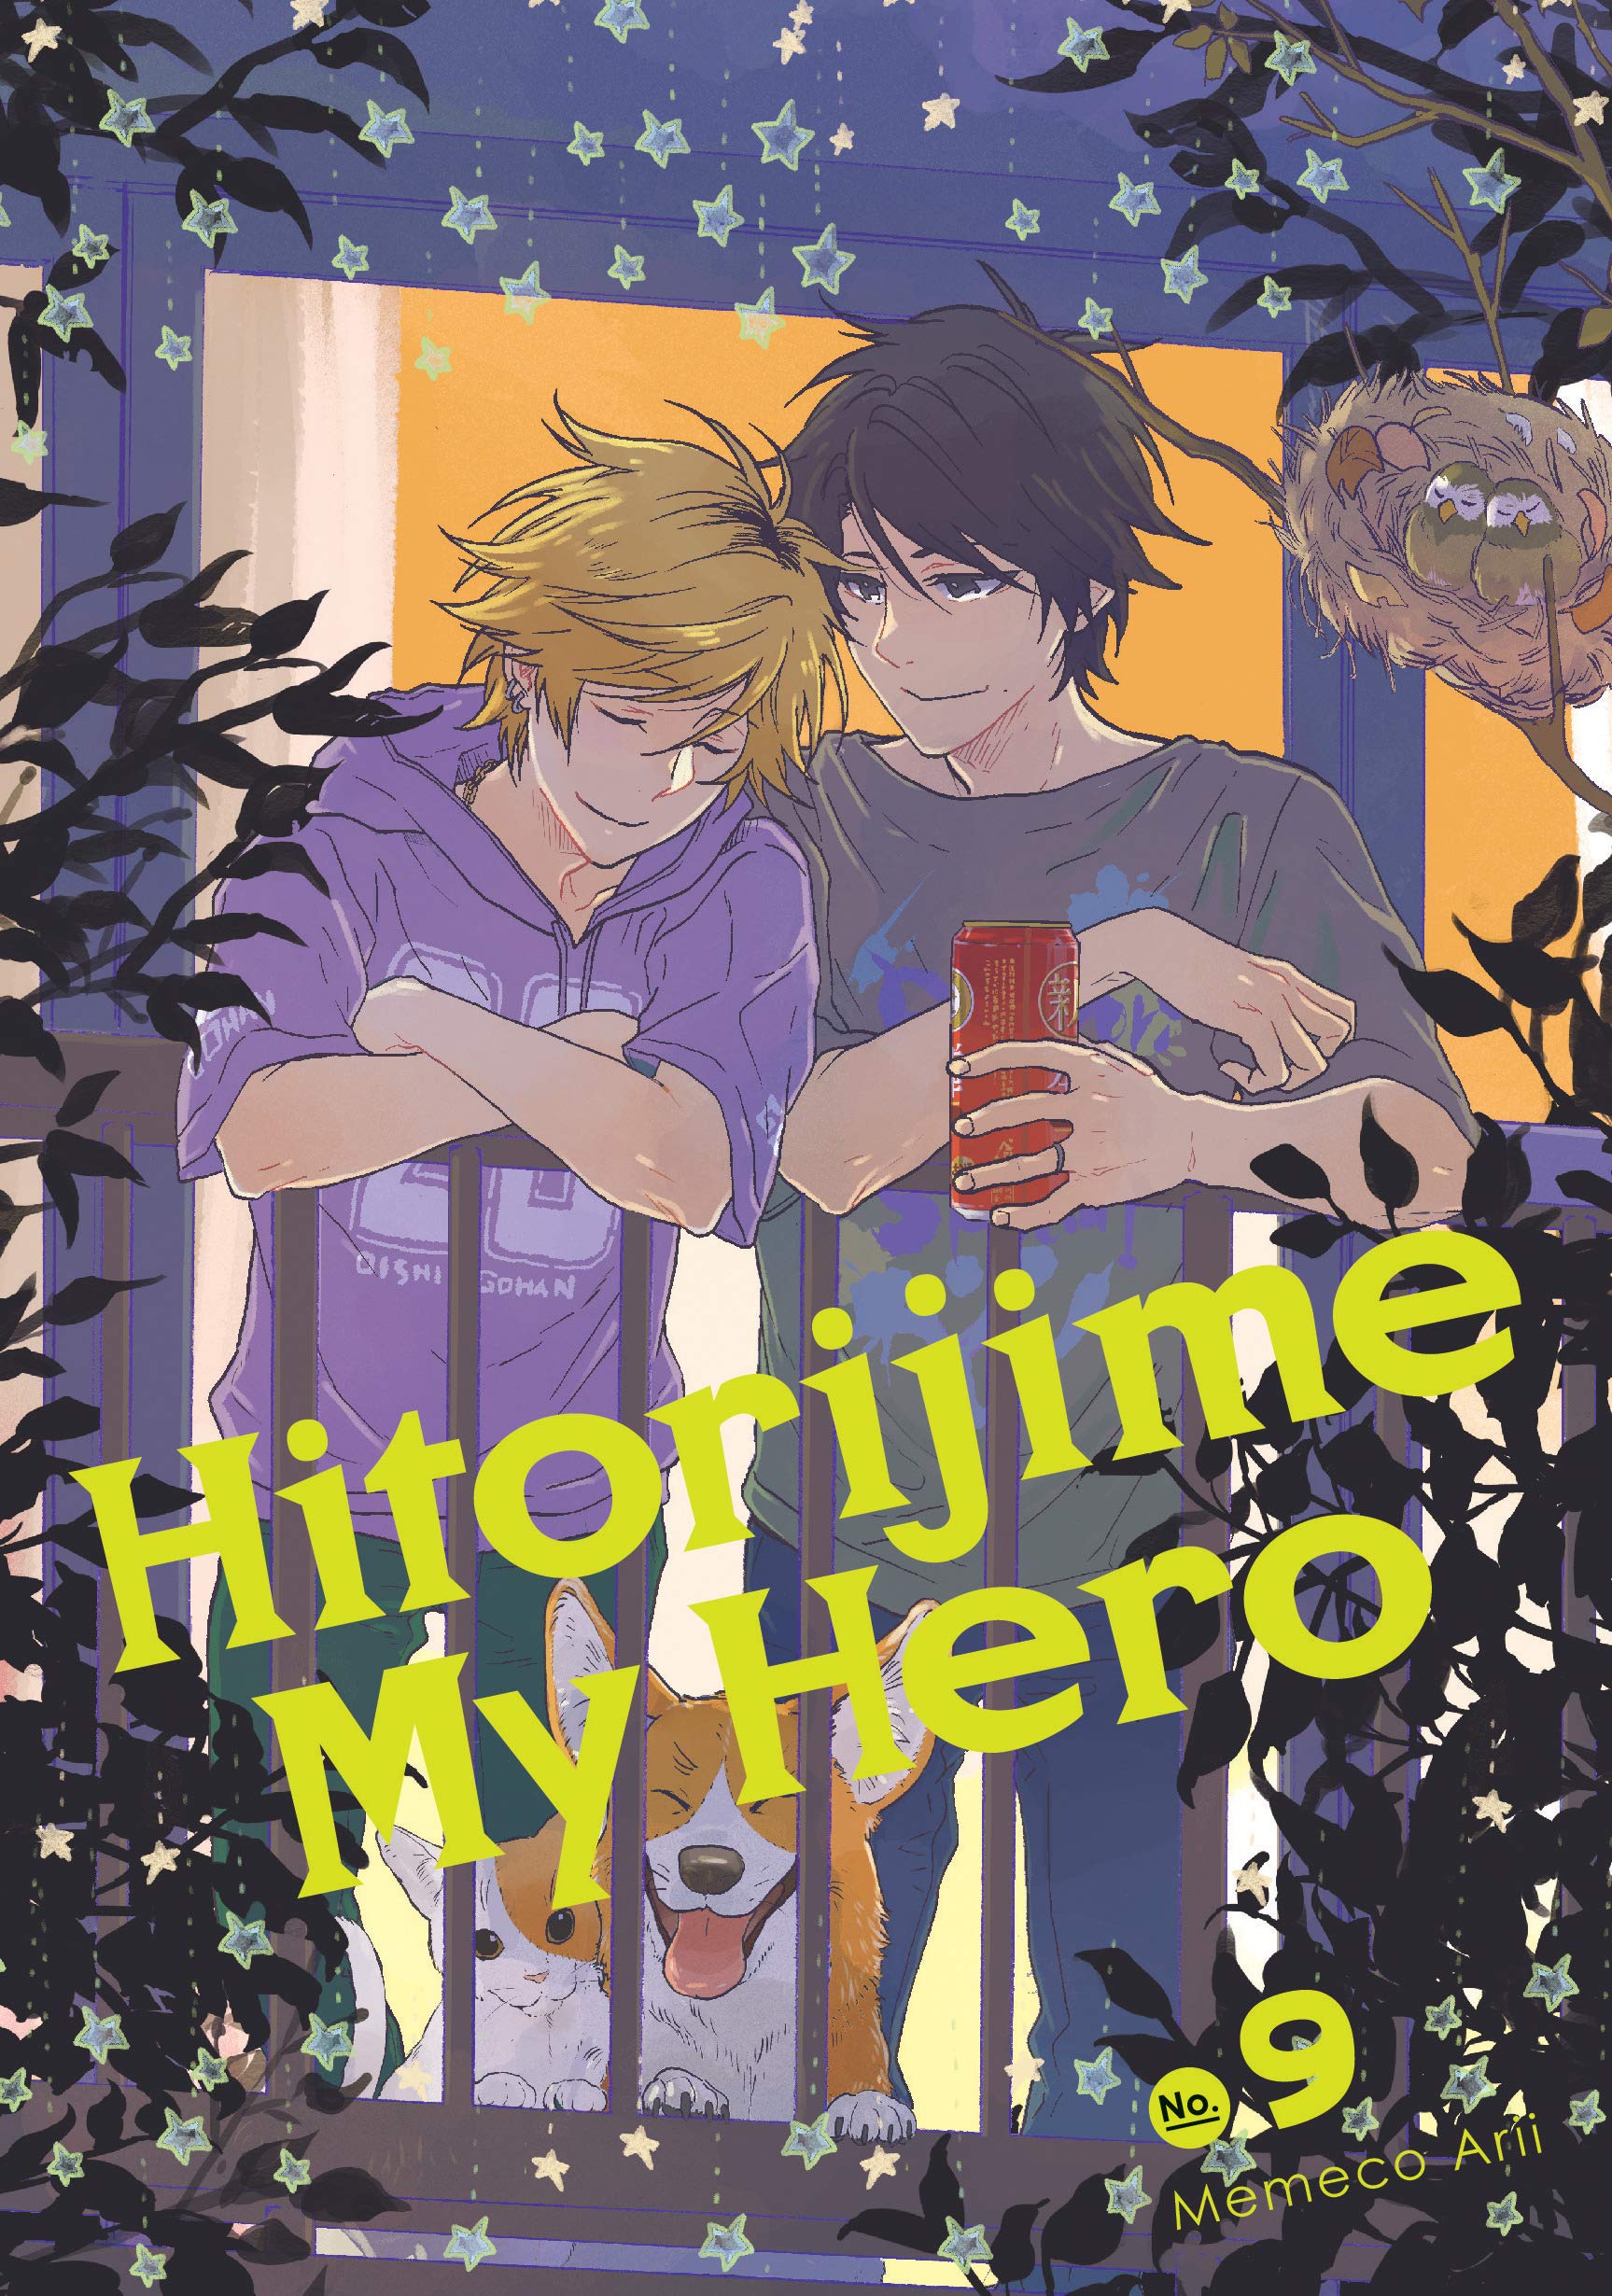 Hitorijime My Hero 9 | Memeco Arii